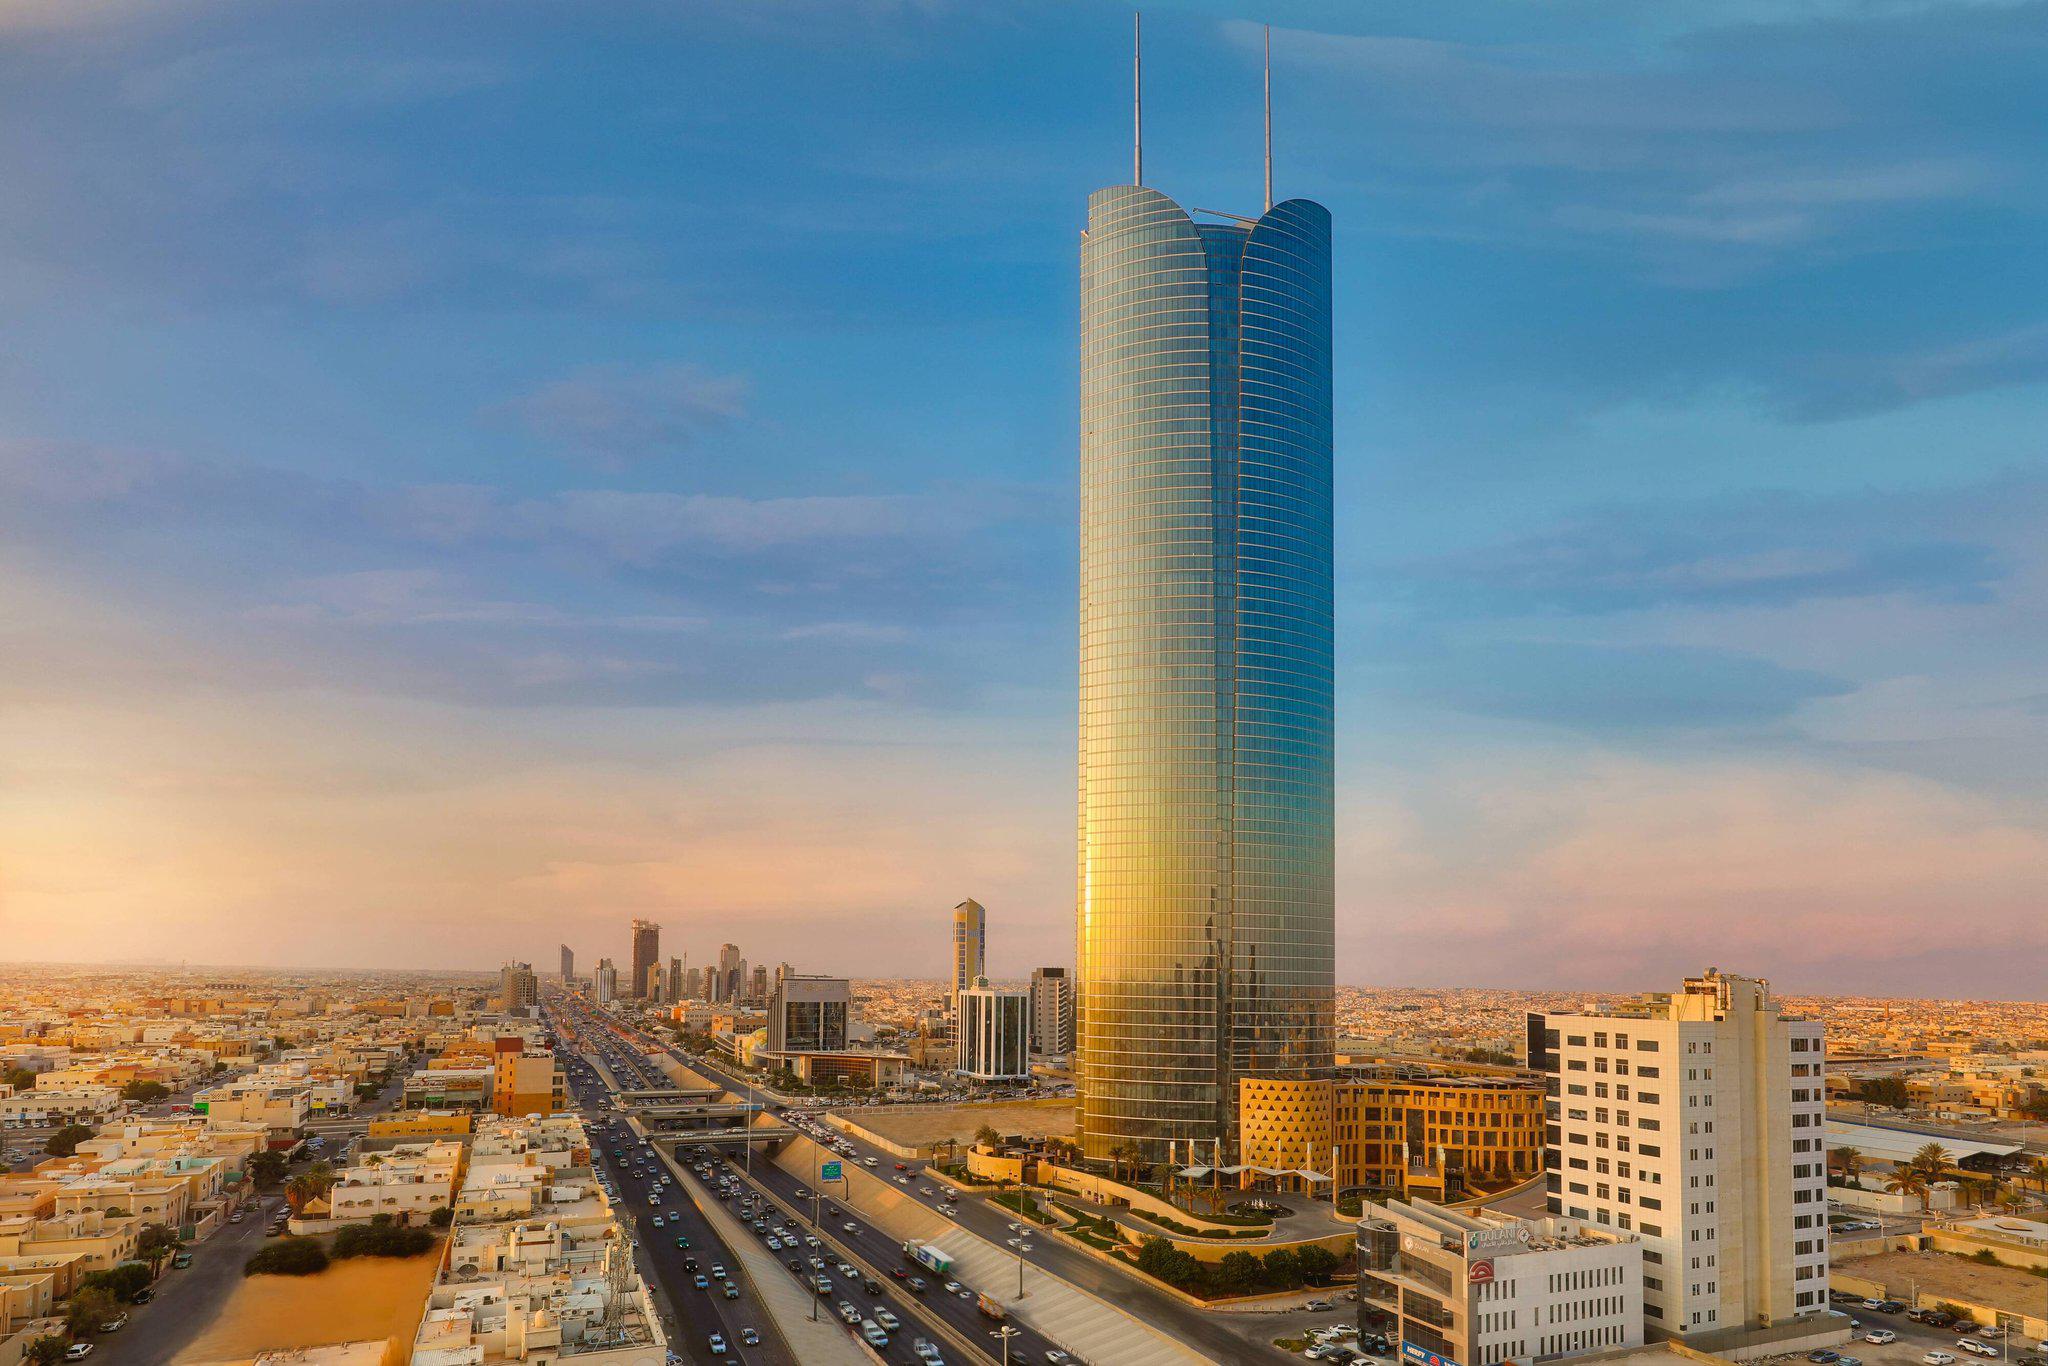 Burj Rafal Riyadh, A Marriott International Hotel